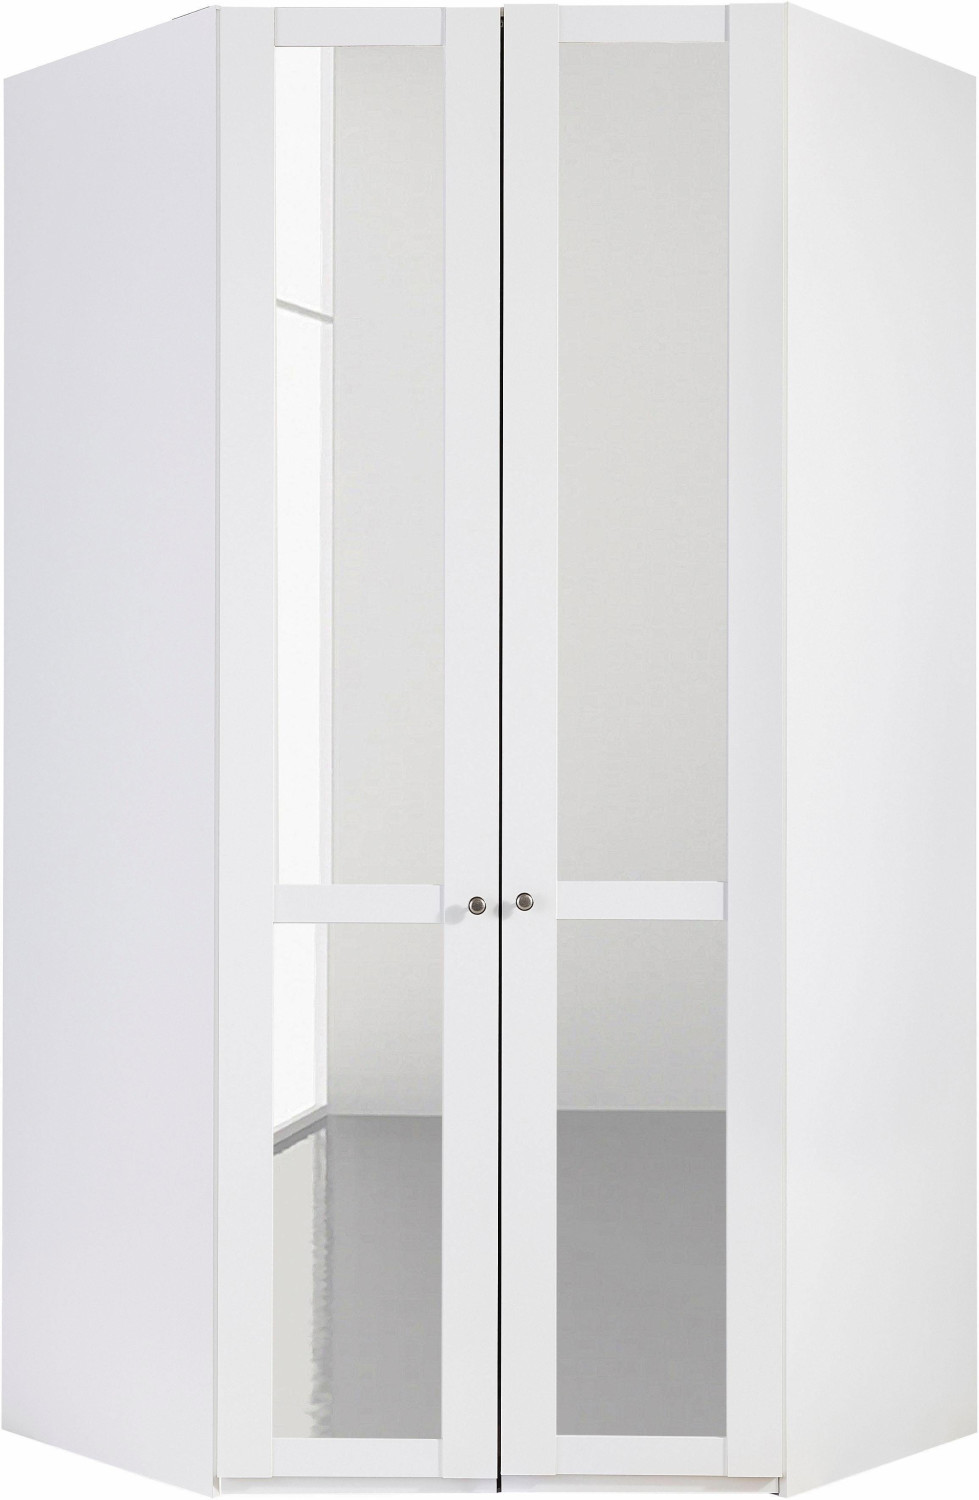 Wimex Newport 208cm mit Spiegel weiß (581793) ab 679,99 € | Preisvergleich  bei